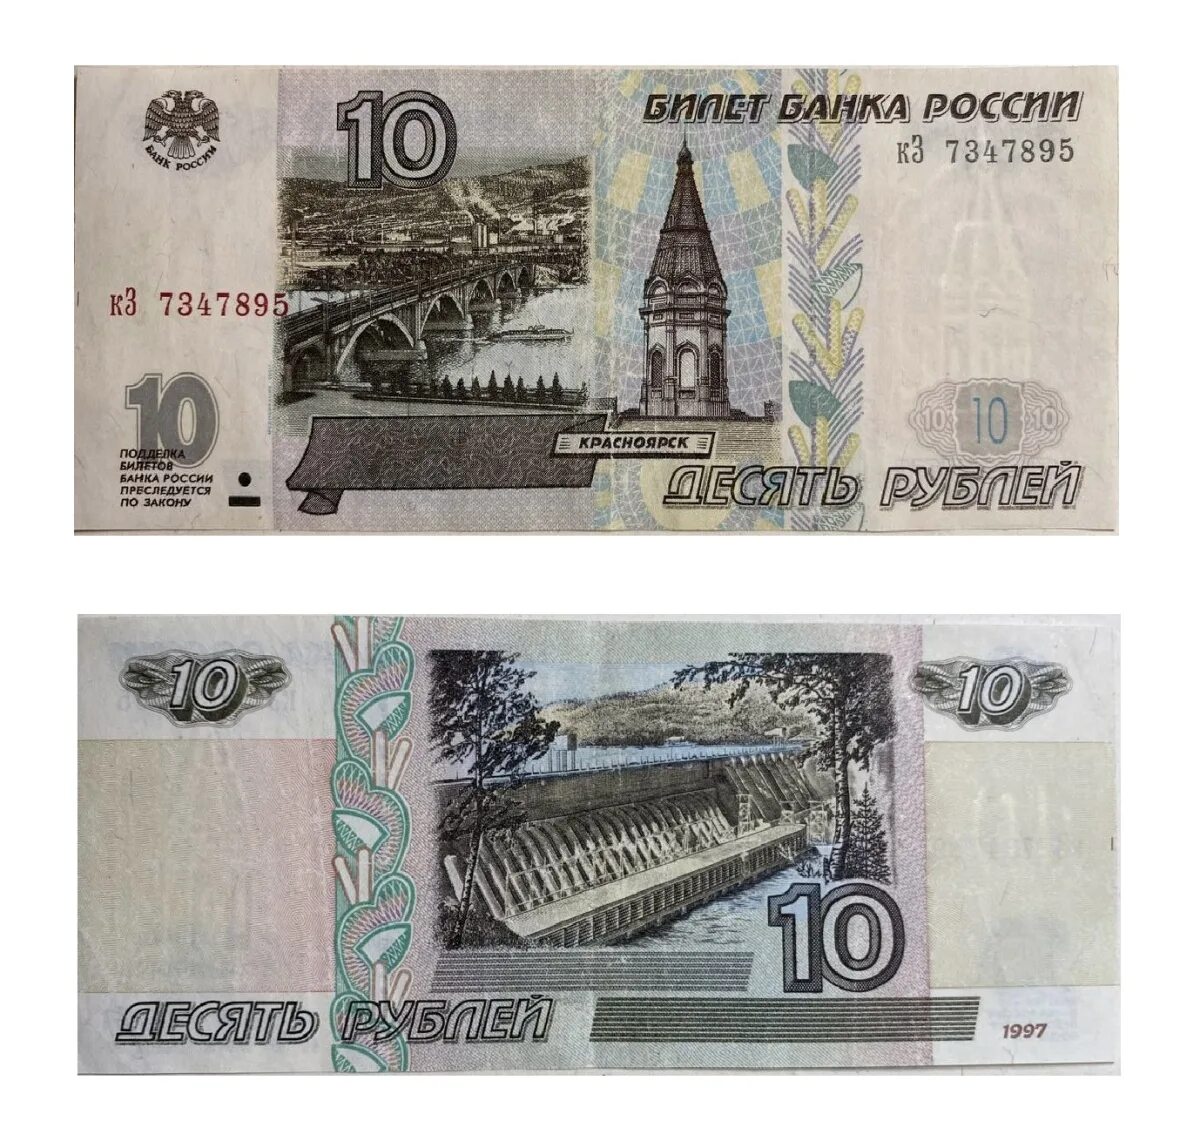 10000 Рублей модификация 1995 года. Купюра 10 рублей 1997. Банкнота 10000 рублей 1995 года. Купюра 10000 рублей 1995 года. Российские рубли 1997 года